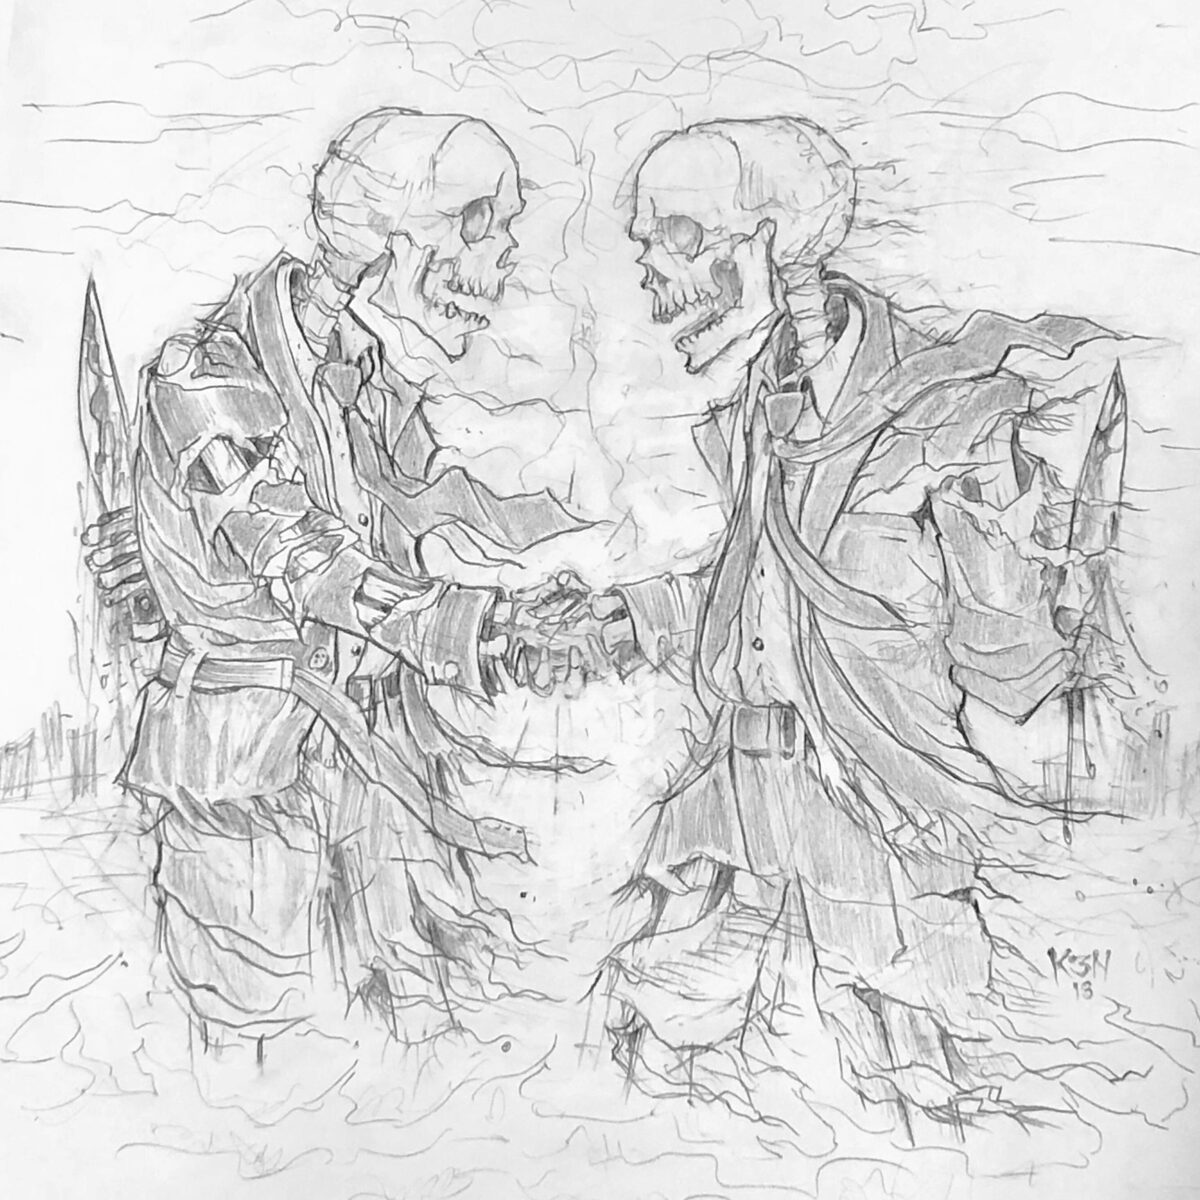 Death in Alliance album artwork sketch